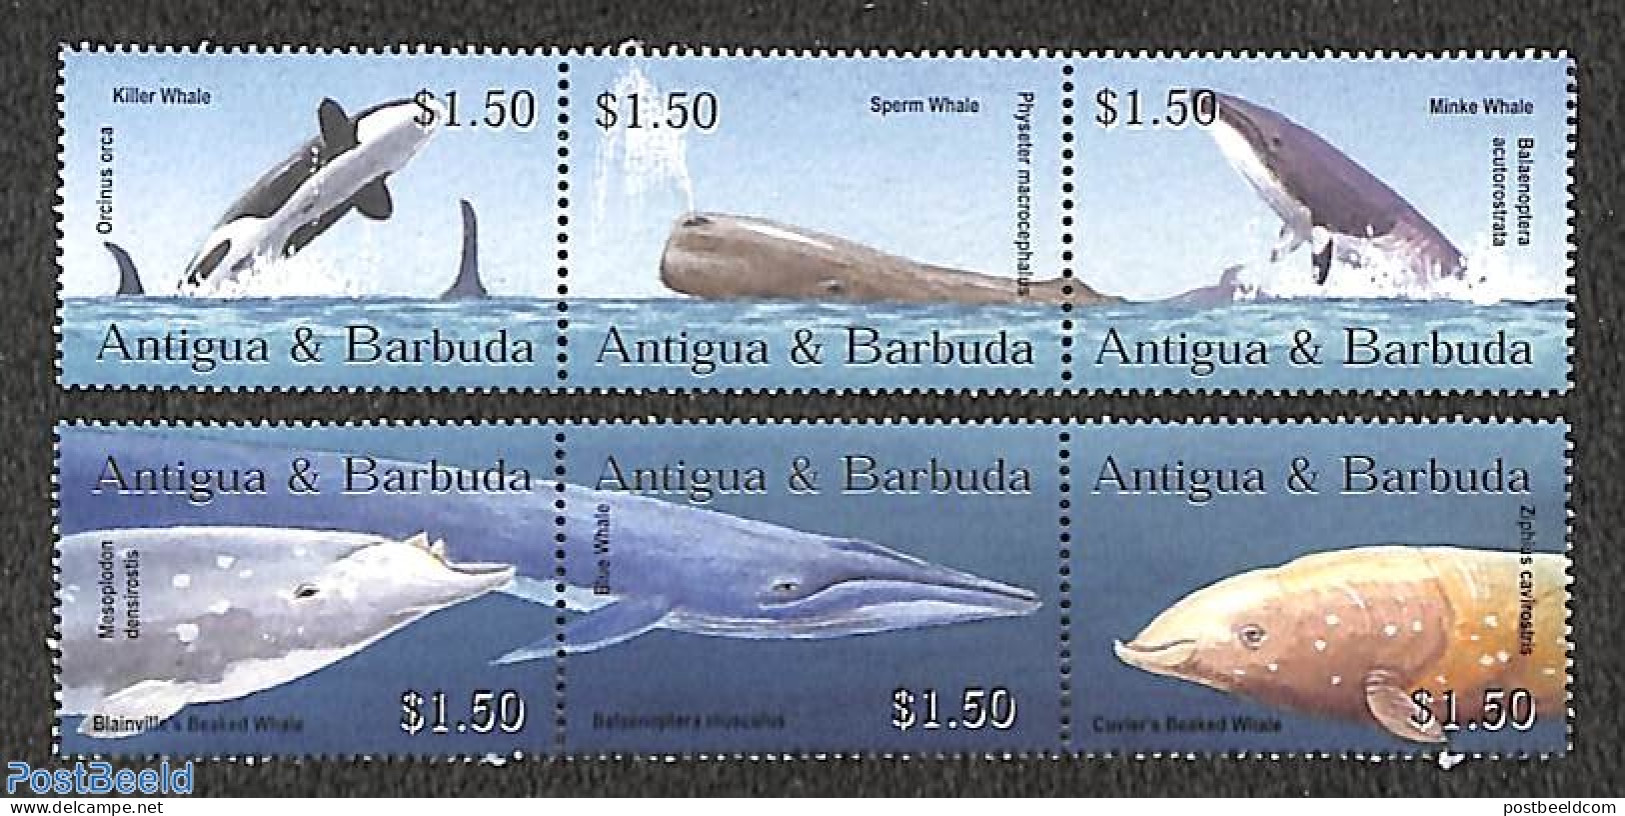 Antigua & Barbuda 2002 Whales 6v, Mint NH, Nature - Sea Mammals - Antigua Et Barbuda (1981-...)